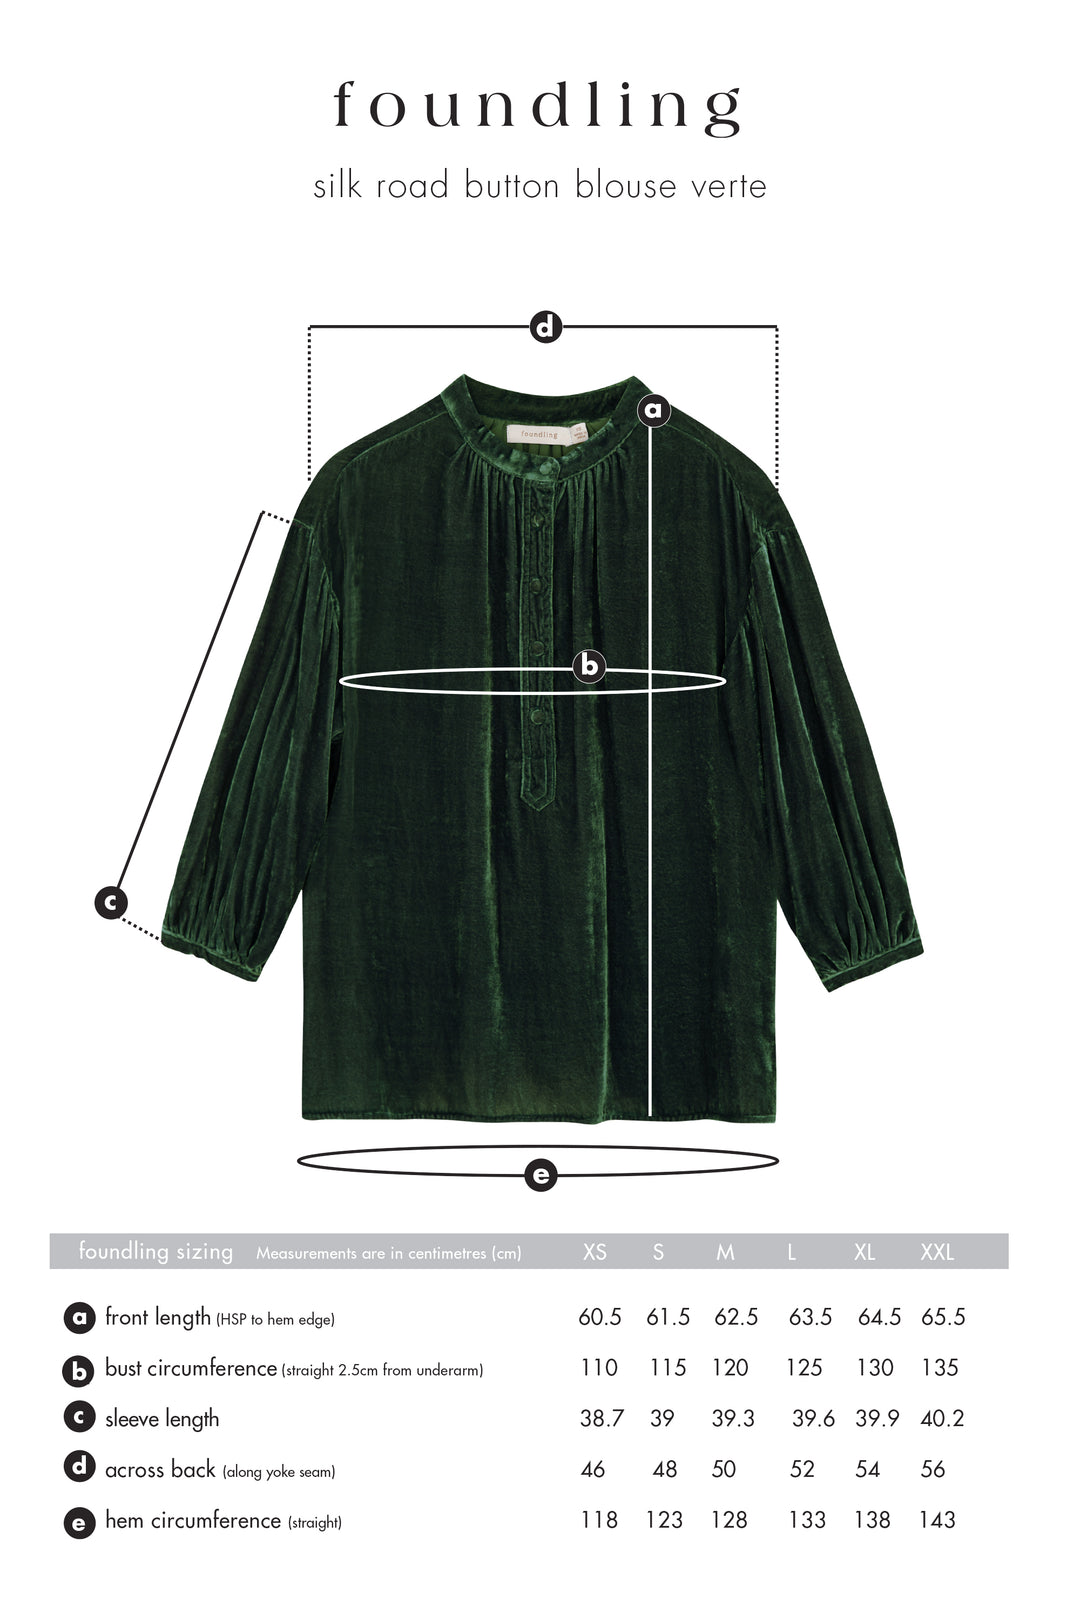 foundling silk velvet button blouse in green verte size guide